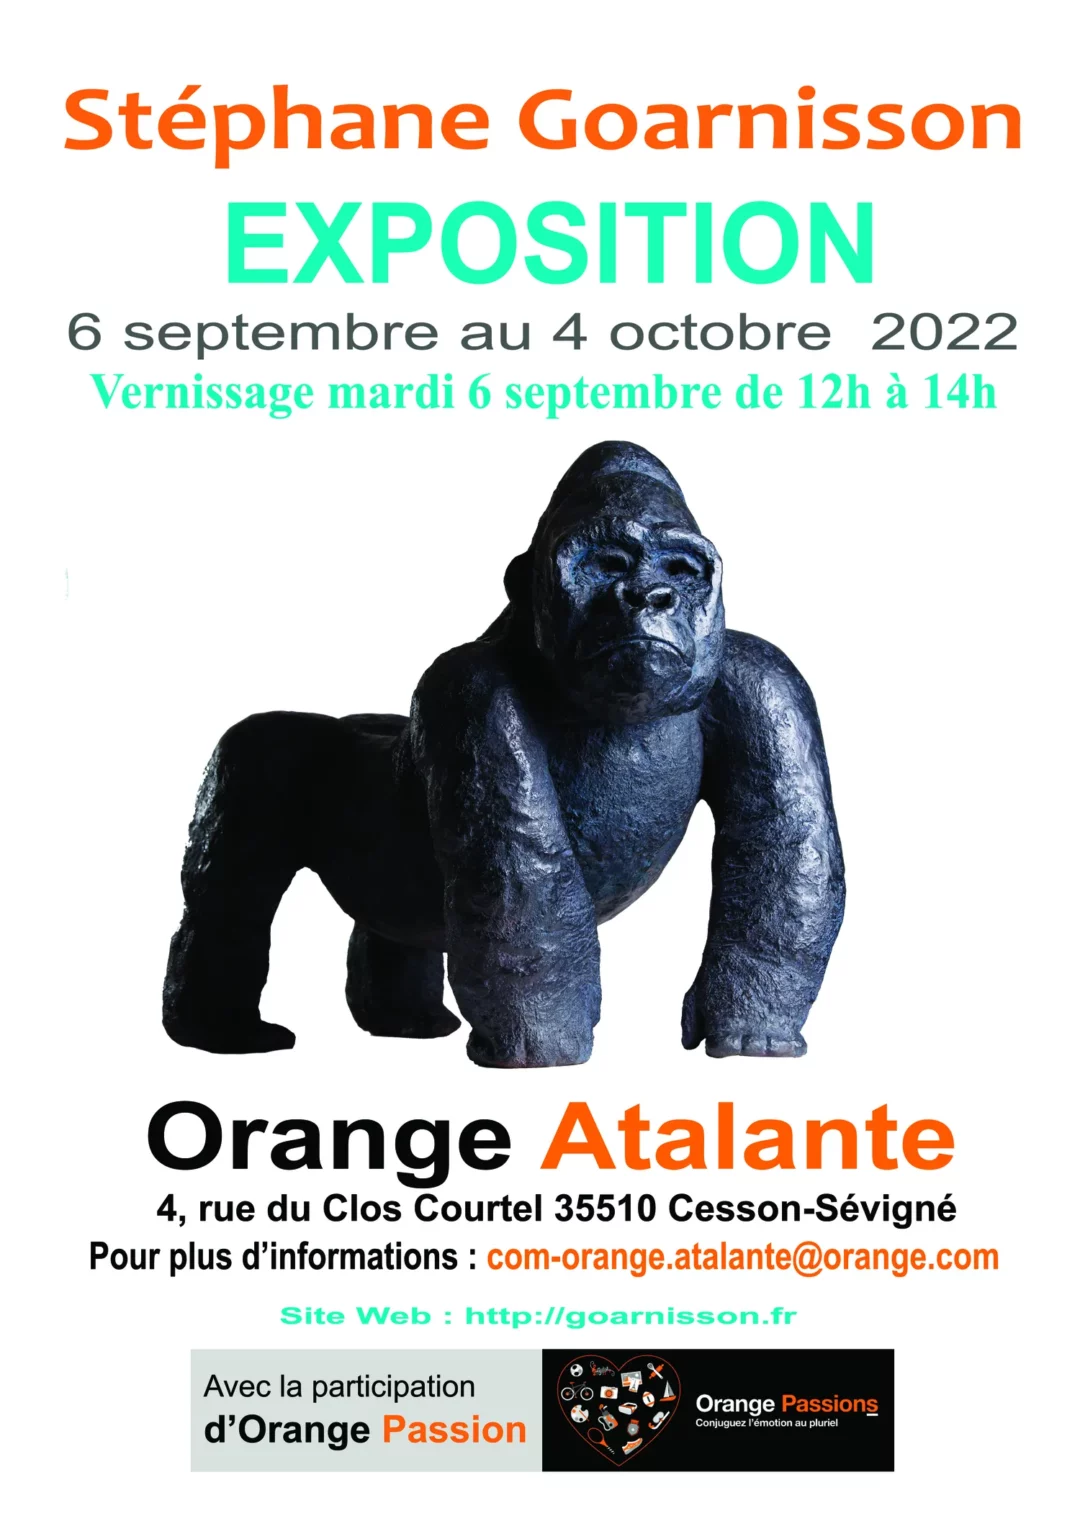 Exposition du 6 septembre au 4 octobre 2022 à Orange Atalante